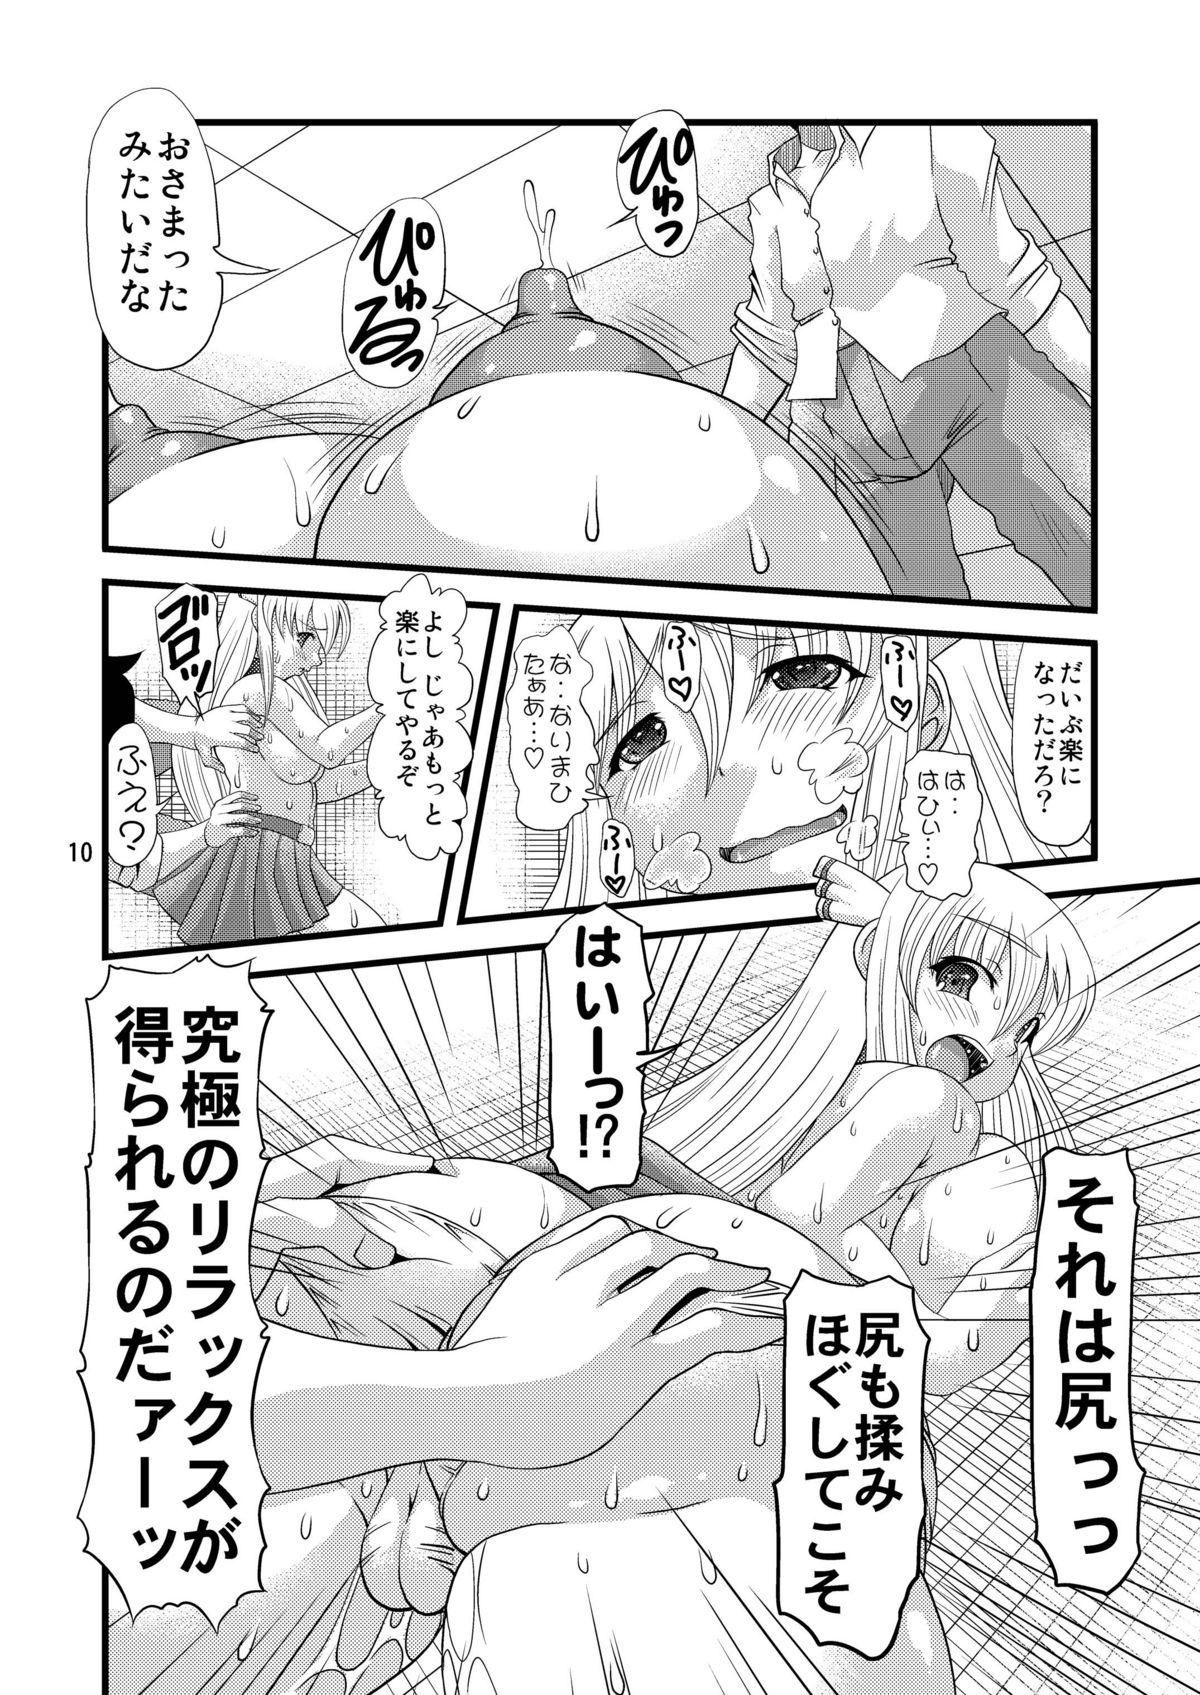 Stripper Oshiri no Tanima ni Insert!! - Sora no otoshimono Rola - Page 10